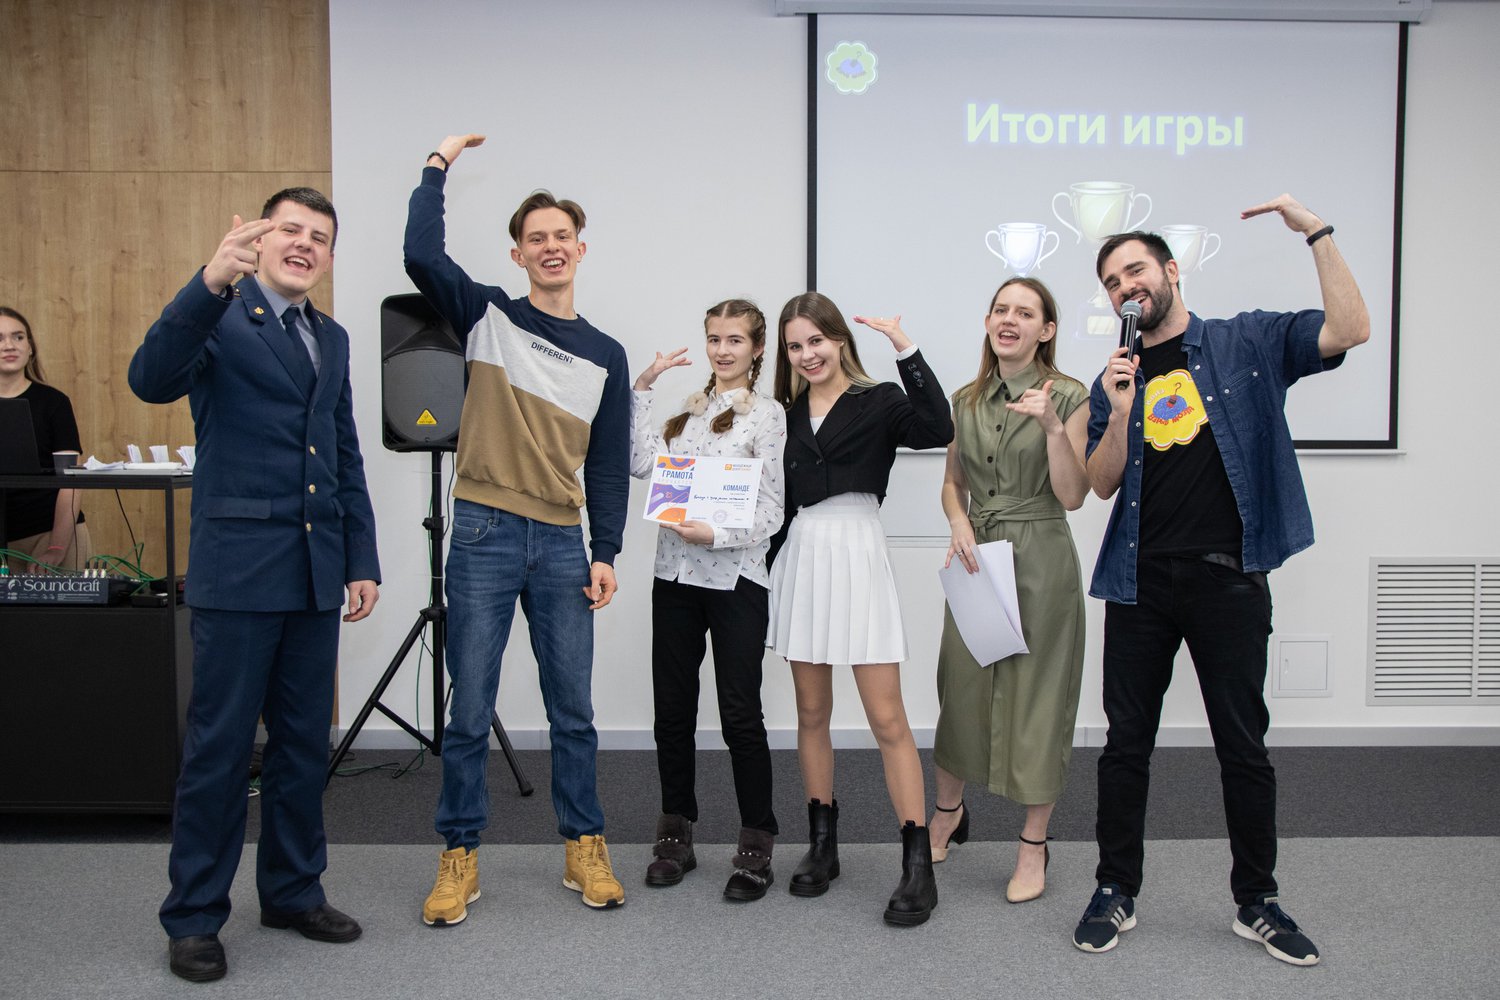 8 декабря в рамках празднования Международного дня волонтёра состоится торжественное награждение самых активных волонтёров Псковского городского молодёжного центра и образовательных учреждений города Пскова.